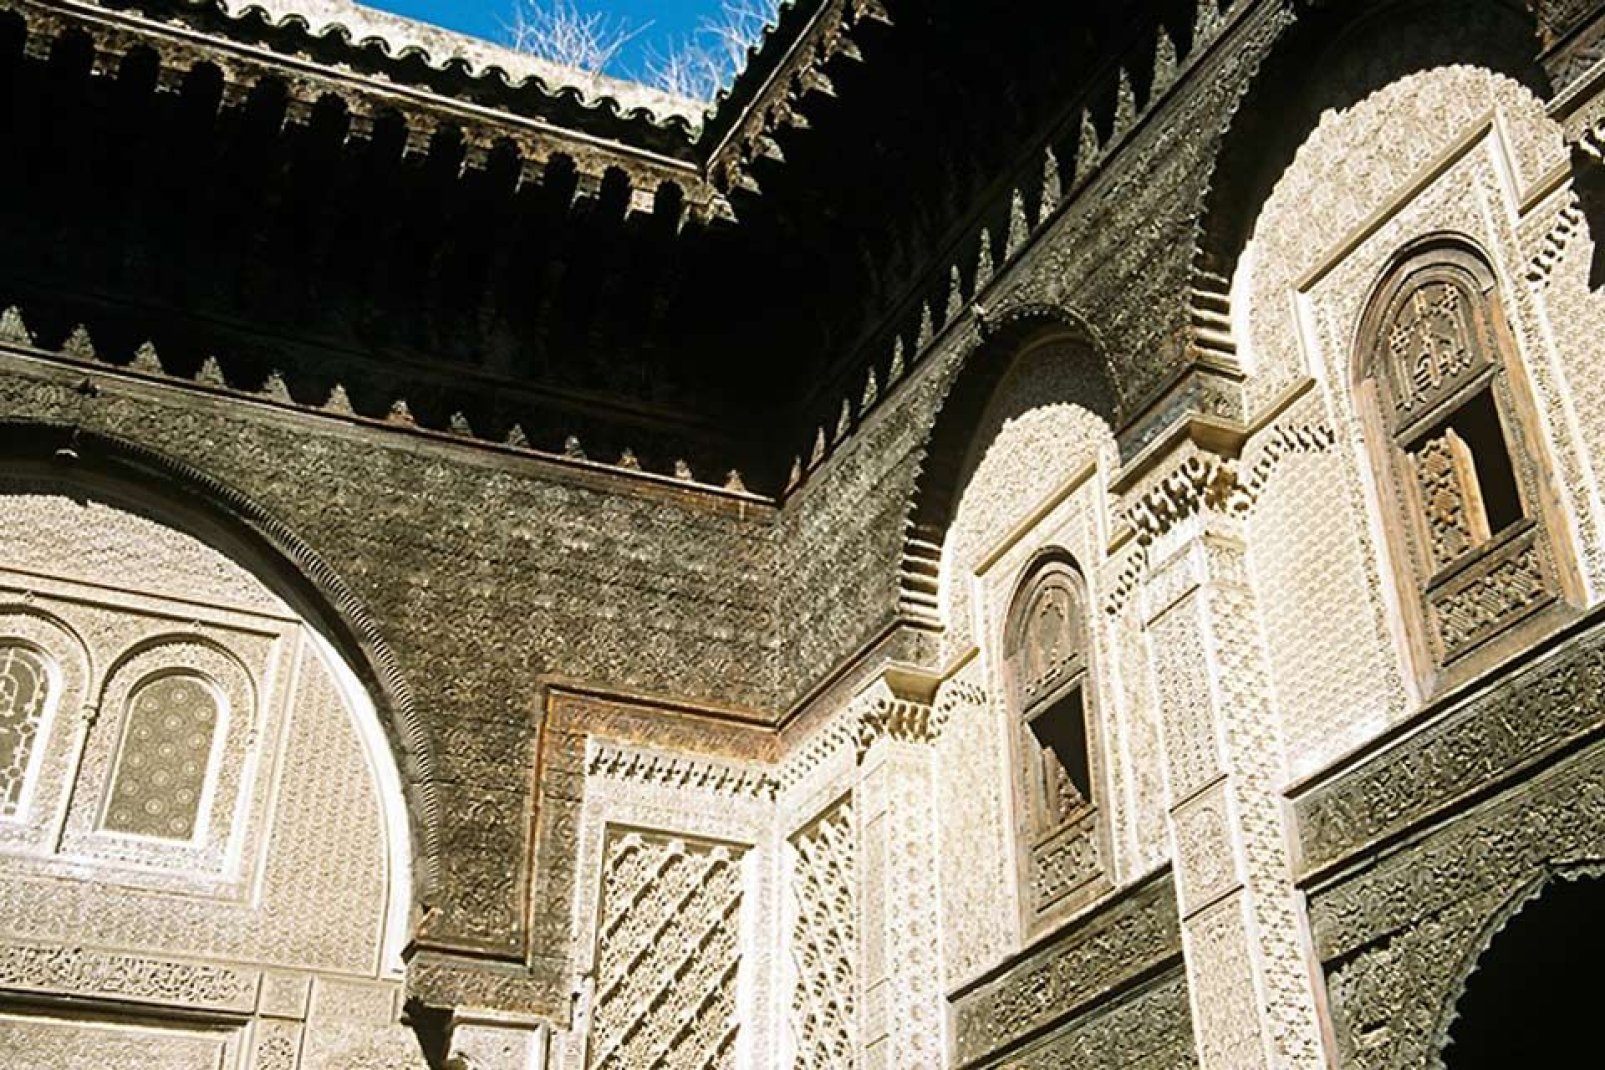 Il palazzo reale di Meknes, Al Mhancha, è stato costruito all'inizio del XVIII secolo e si trova al centro della Kasbah ismailiana.